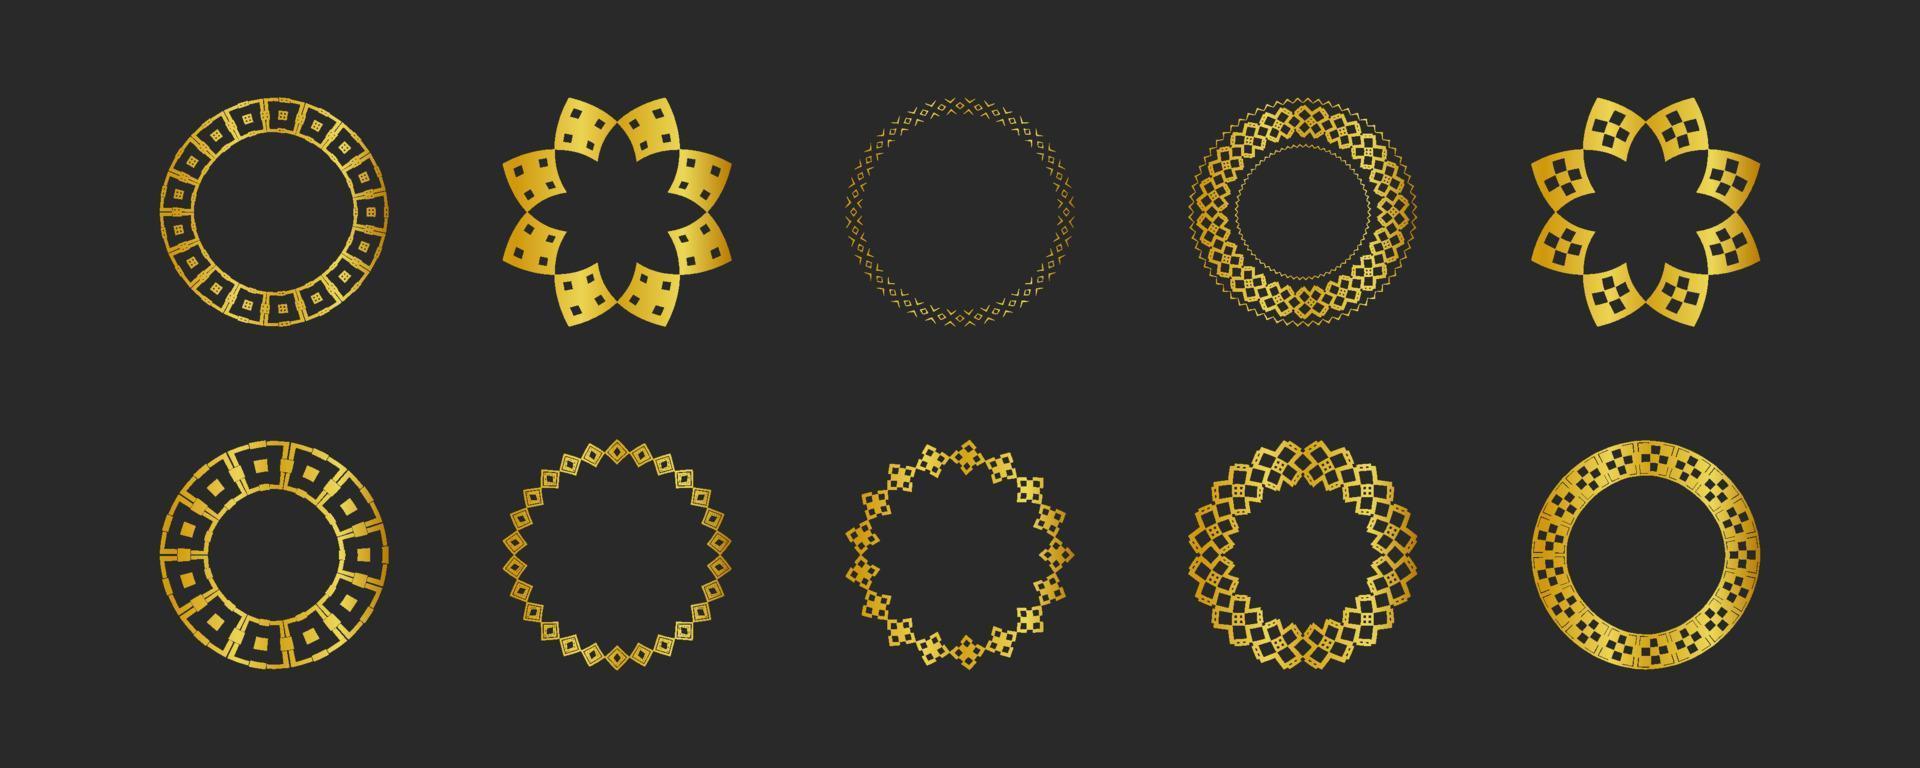 coleção de fundos pretos e elementos geométricos dourados. conjunto de etiquetas, ícones, logotipos e padrões sem emenda. modelos com folha de luxo para embalagem vetor